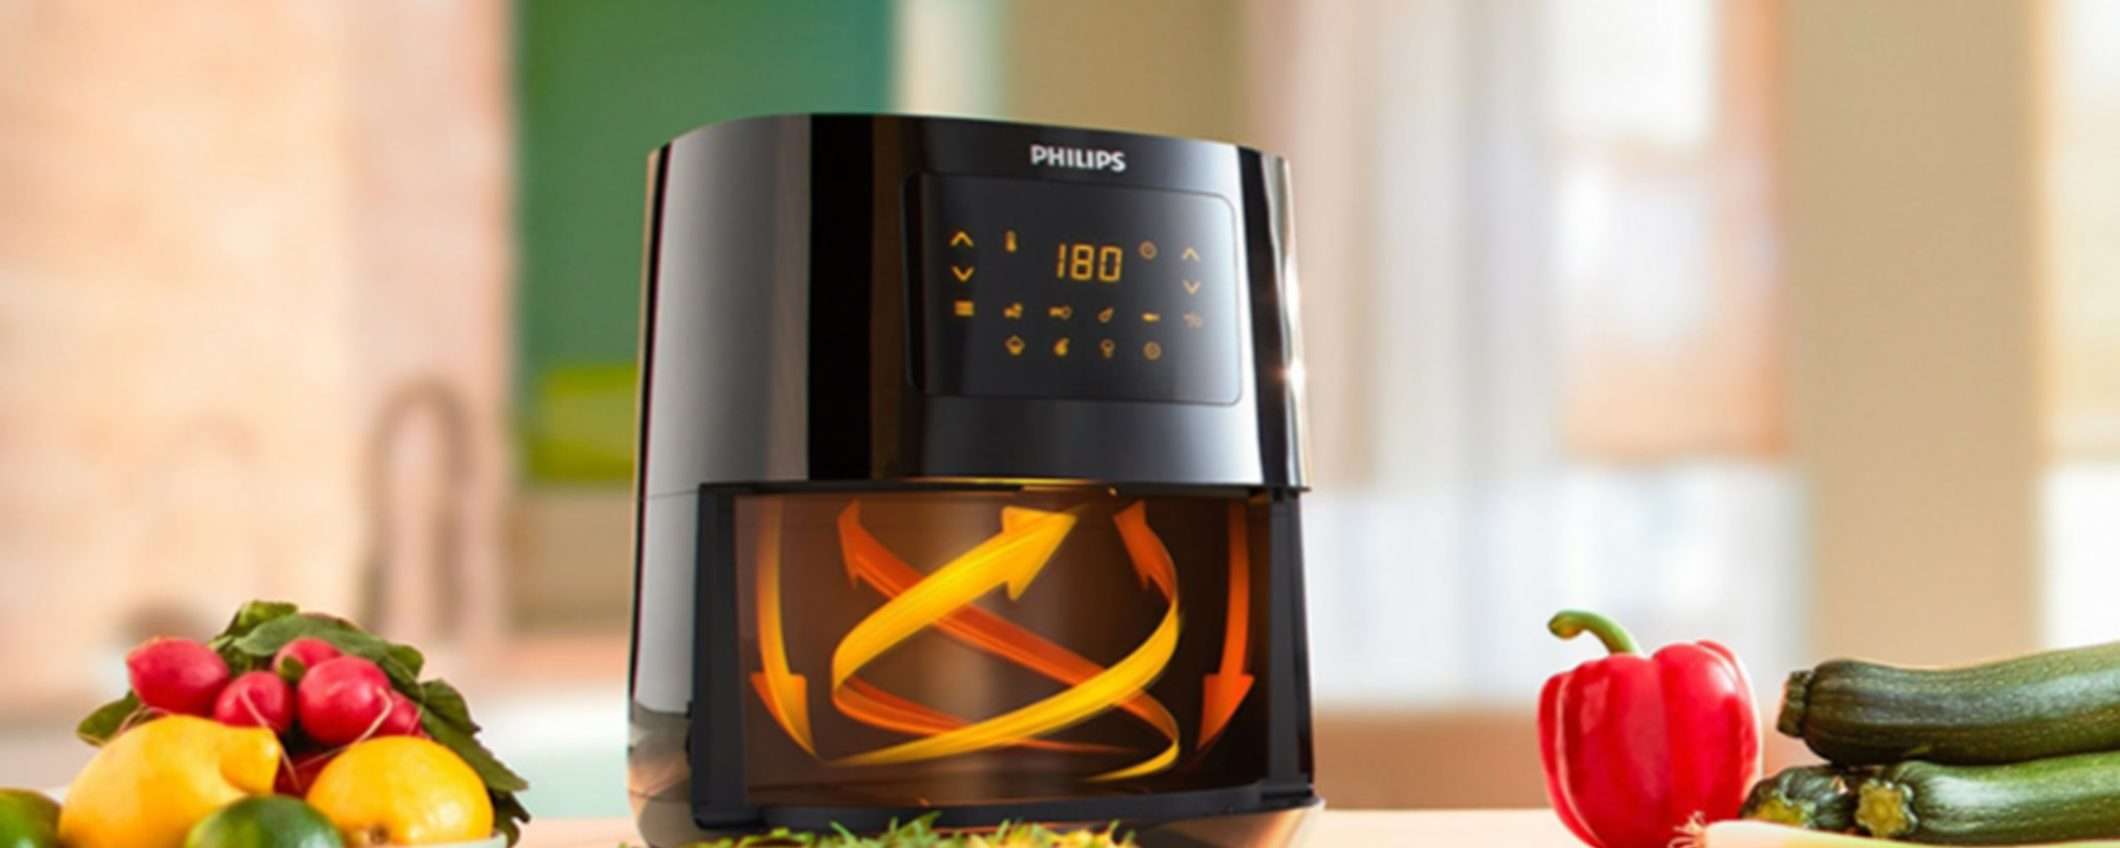 Friggitrice ad aria Philips 3000 series L al prezzo più basso degli ultimi 30 giorni (anche in 3 rate da 29,9€)